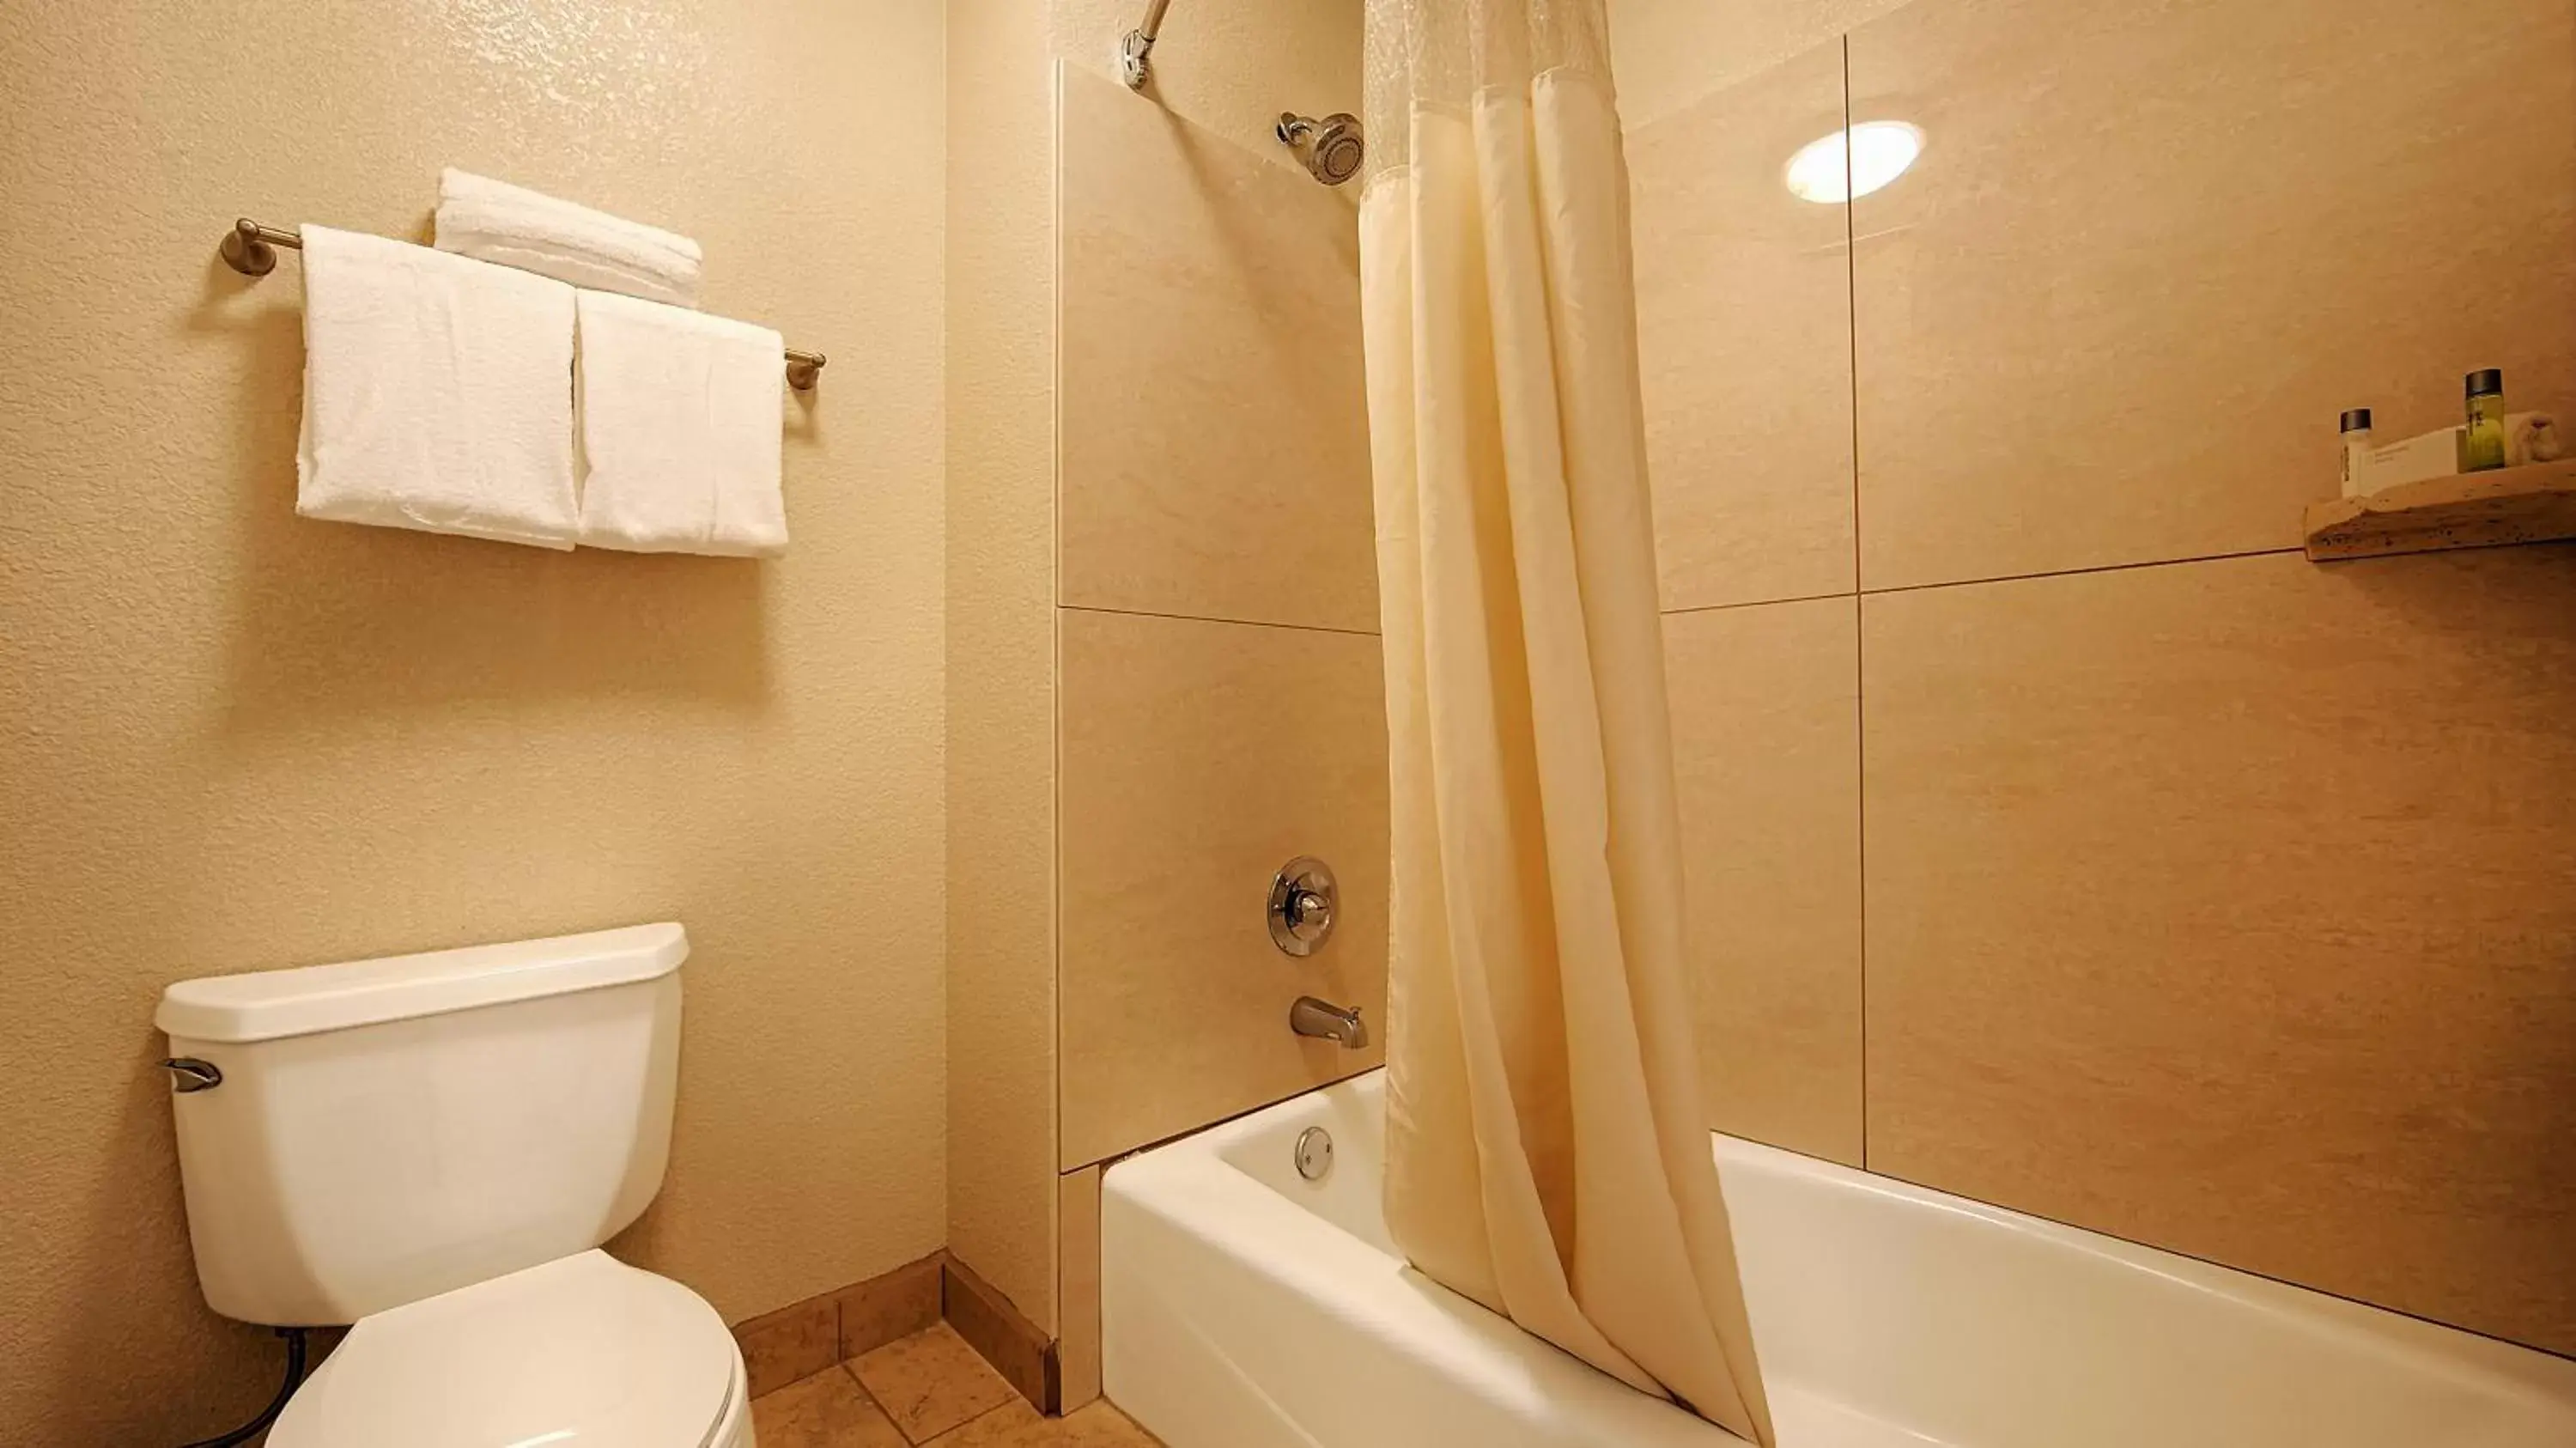 Toilet, Bathroom in Best Western Plus Executive Inn & Suites